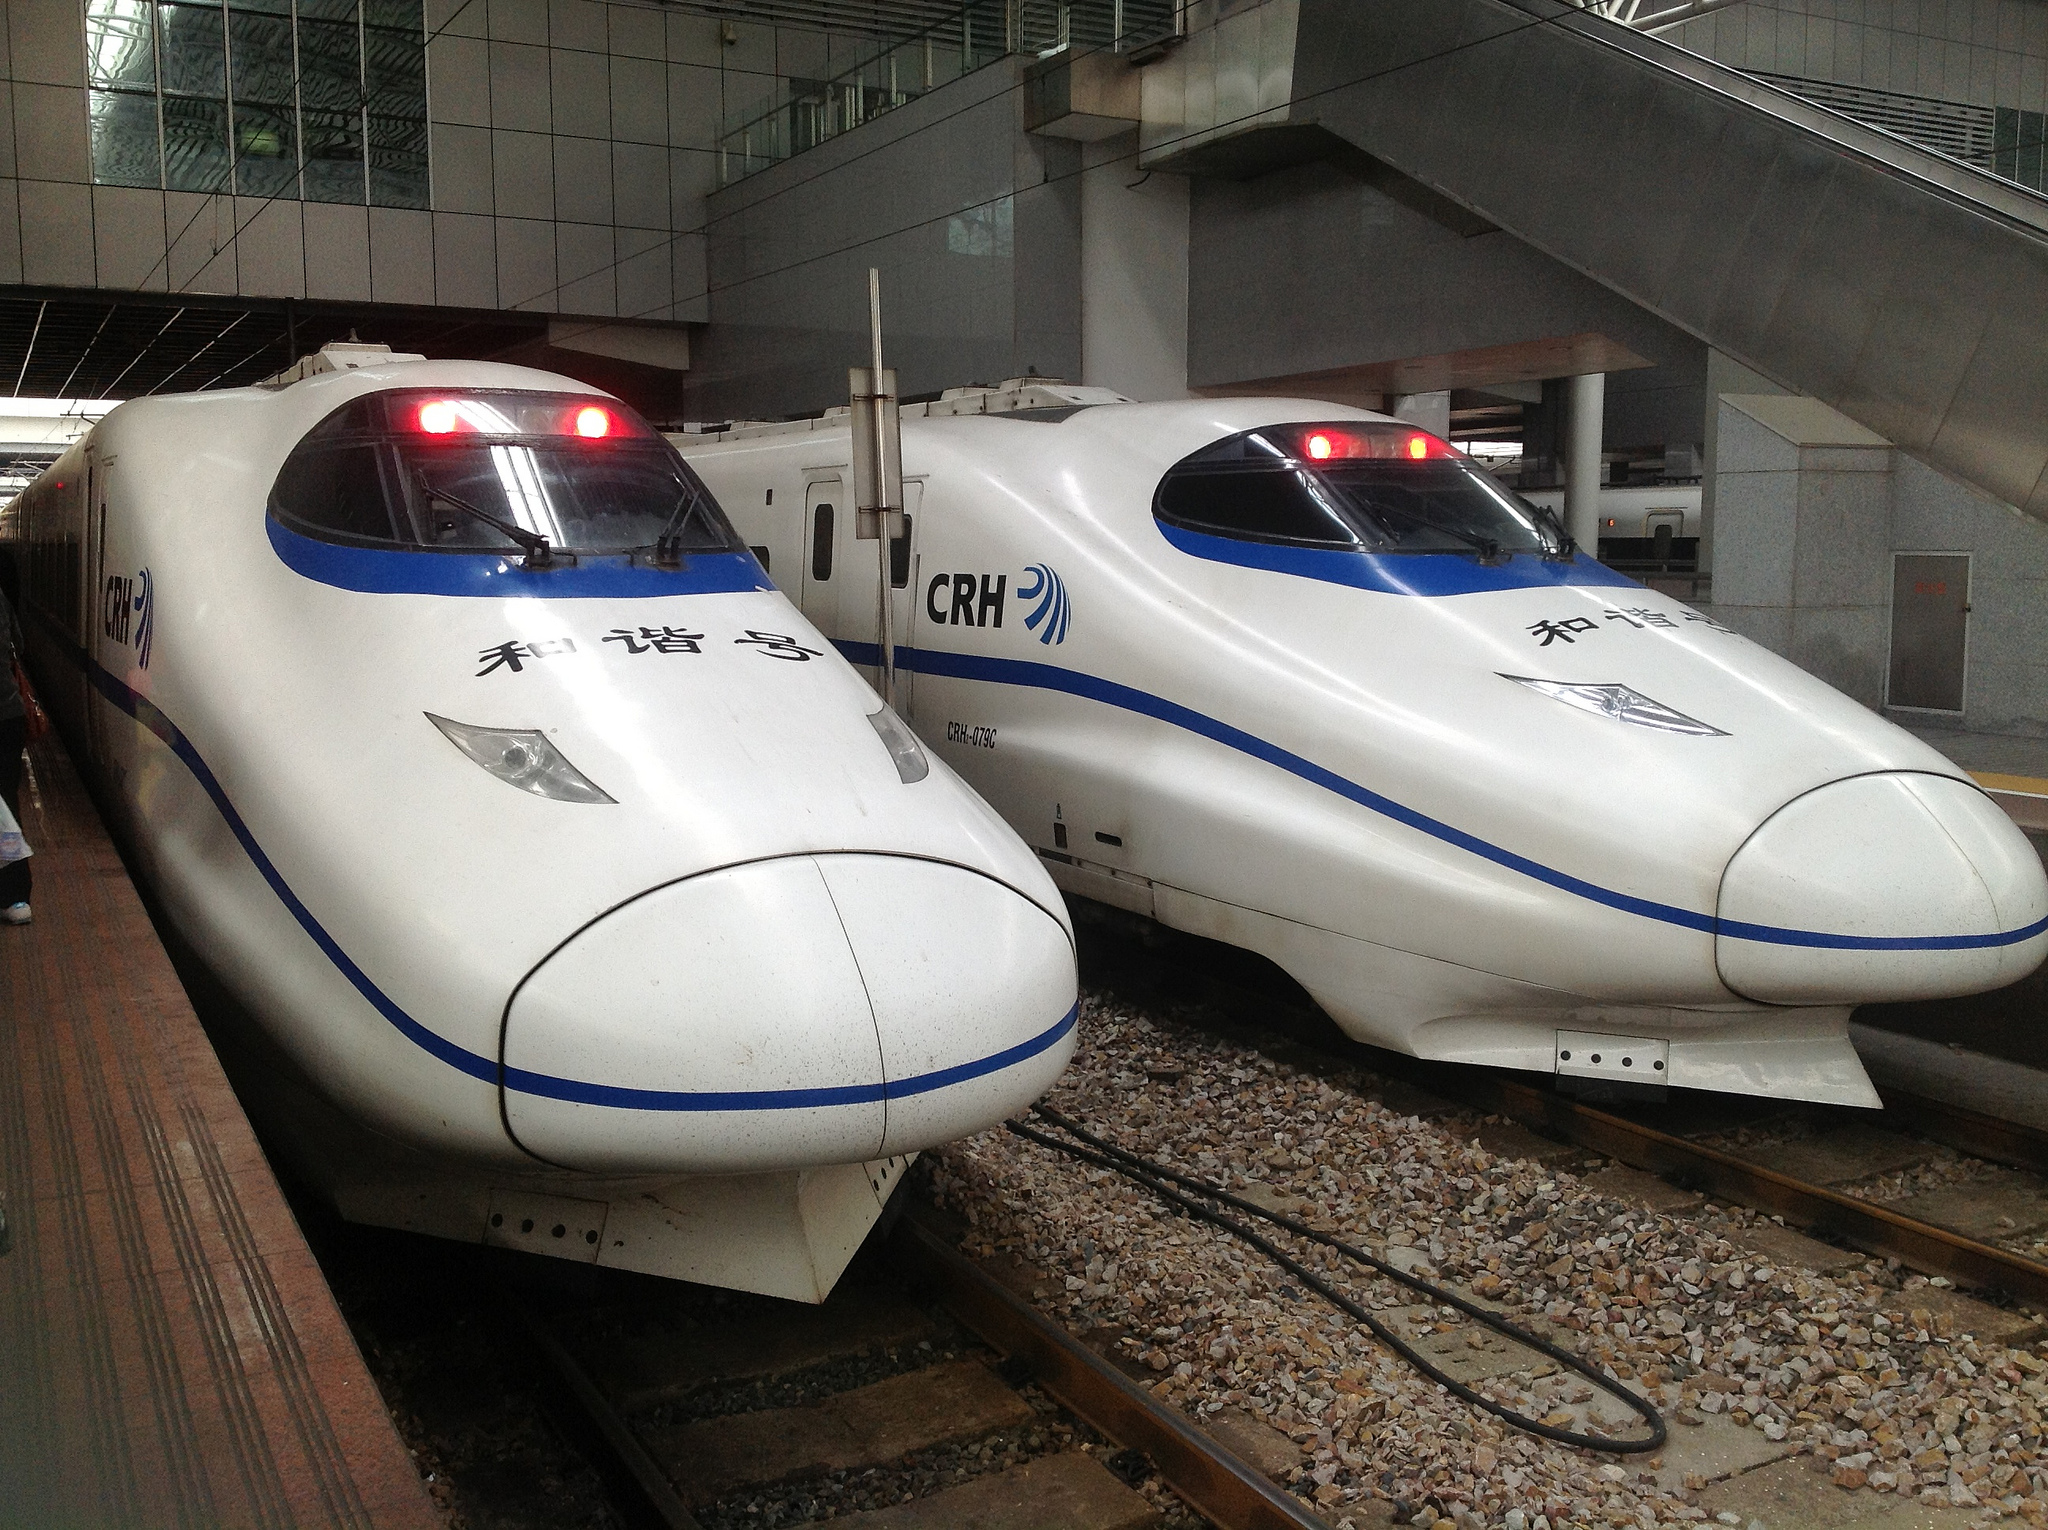 Nagysebességű vonat csak a jó gyerekeknek jár (Forrás: Marufish / CC-BY)